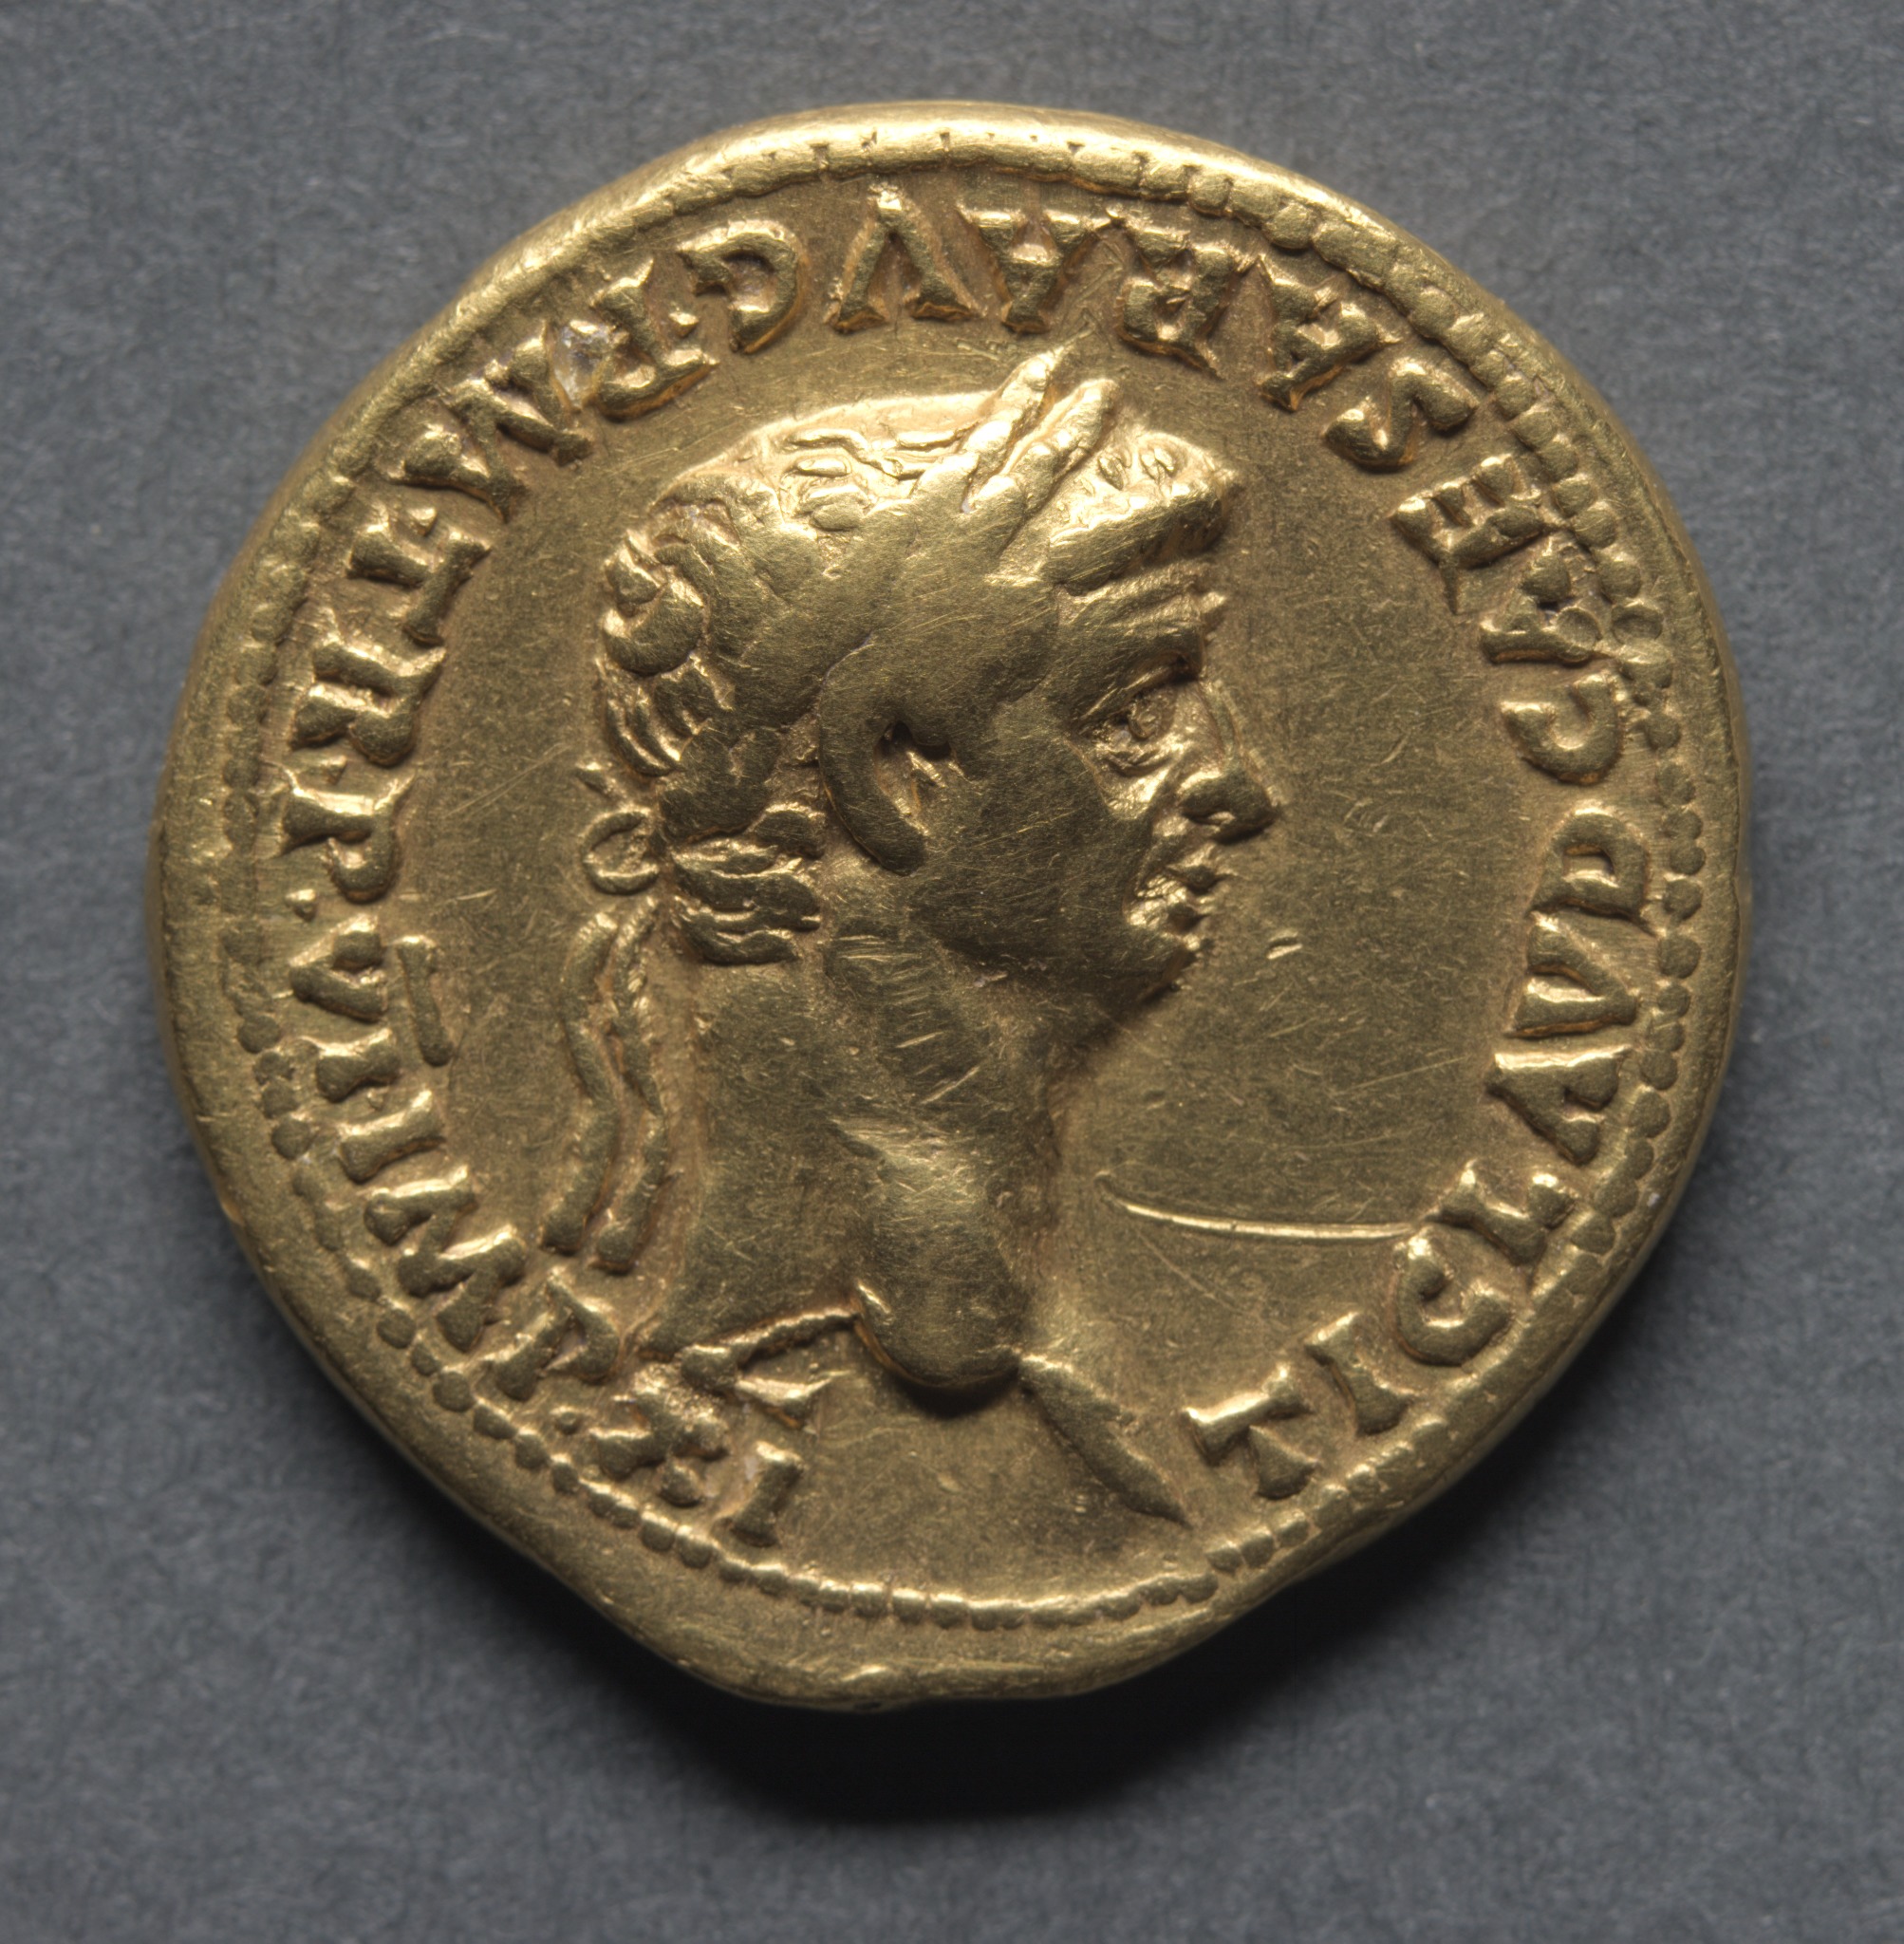 Aureus: Bust of Claudius I (obverse)